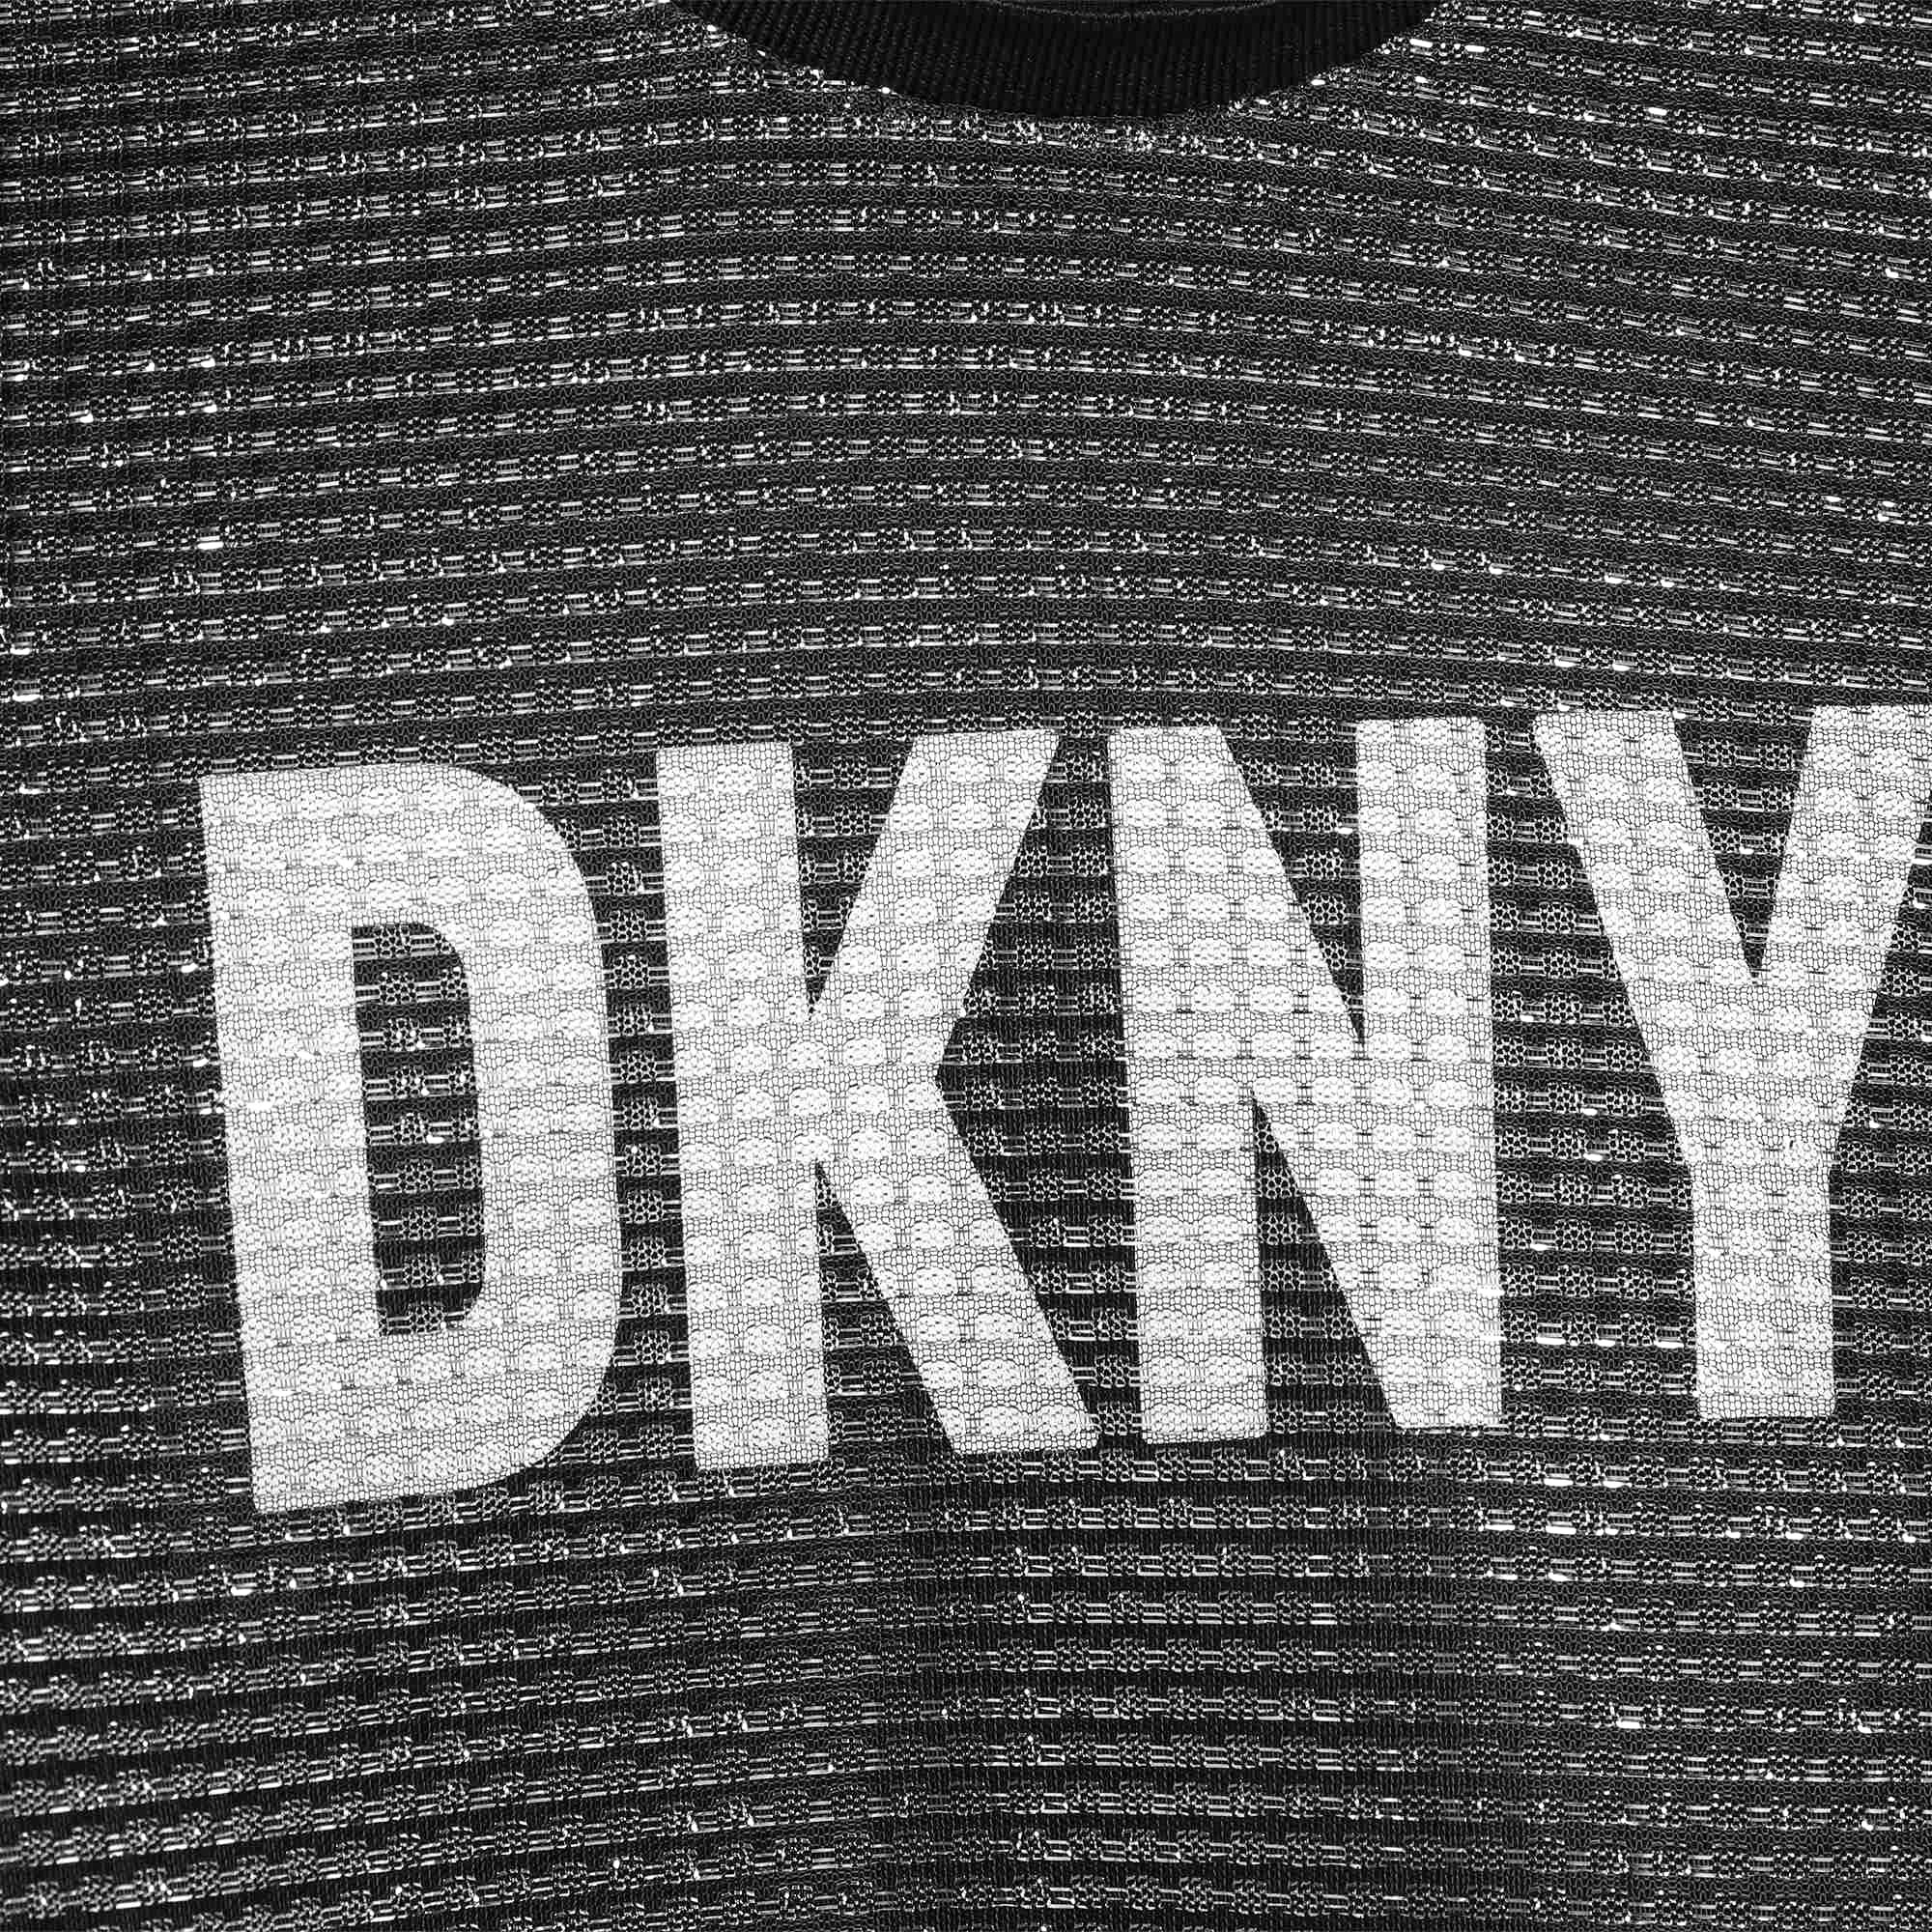 Robe de cérémonie 2-en-1 DKNY pour FILLE